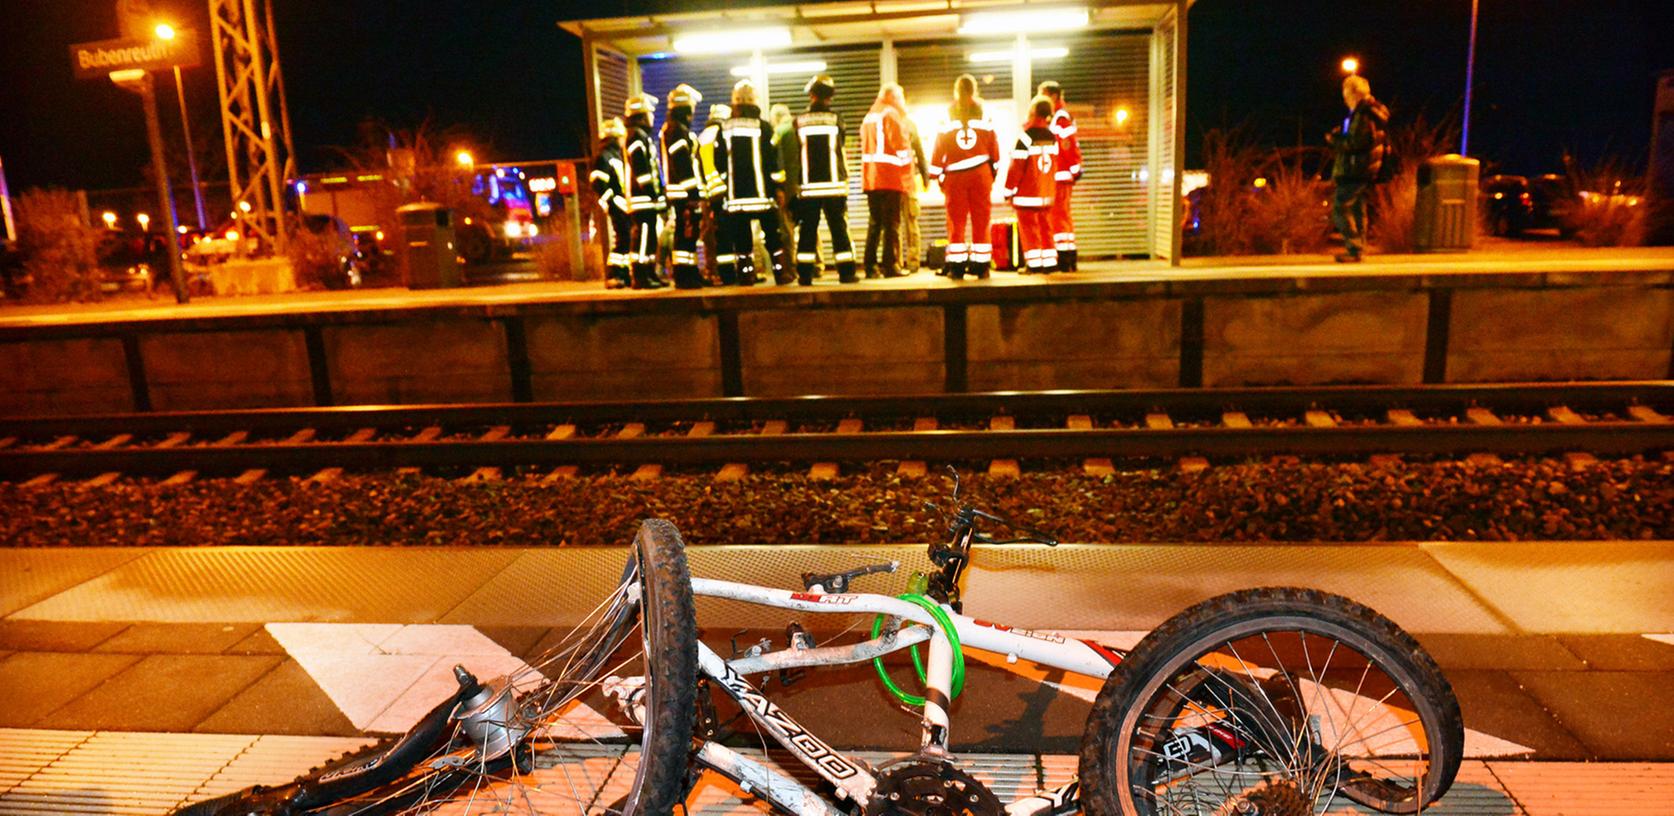 Am Bubenreuther Bahnhof ist eine Frau von einem Zug überrollt worden. Ihr Fahrrad wurde zermalmt, sie selbst blieb unverletzt.